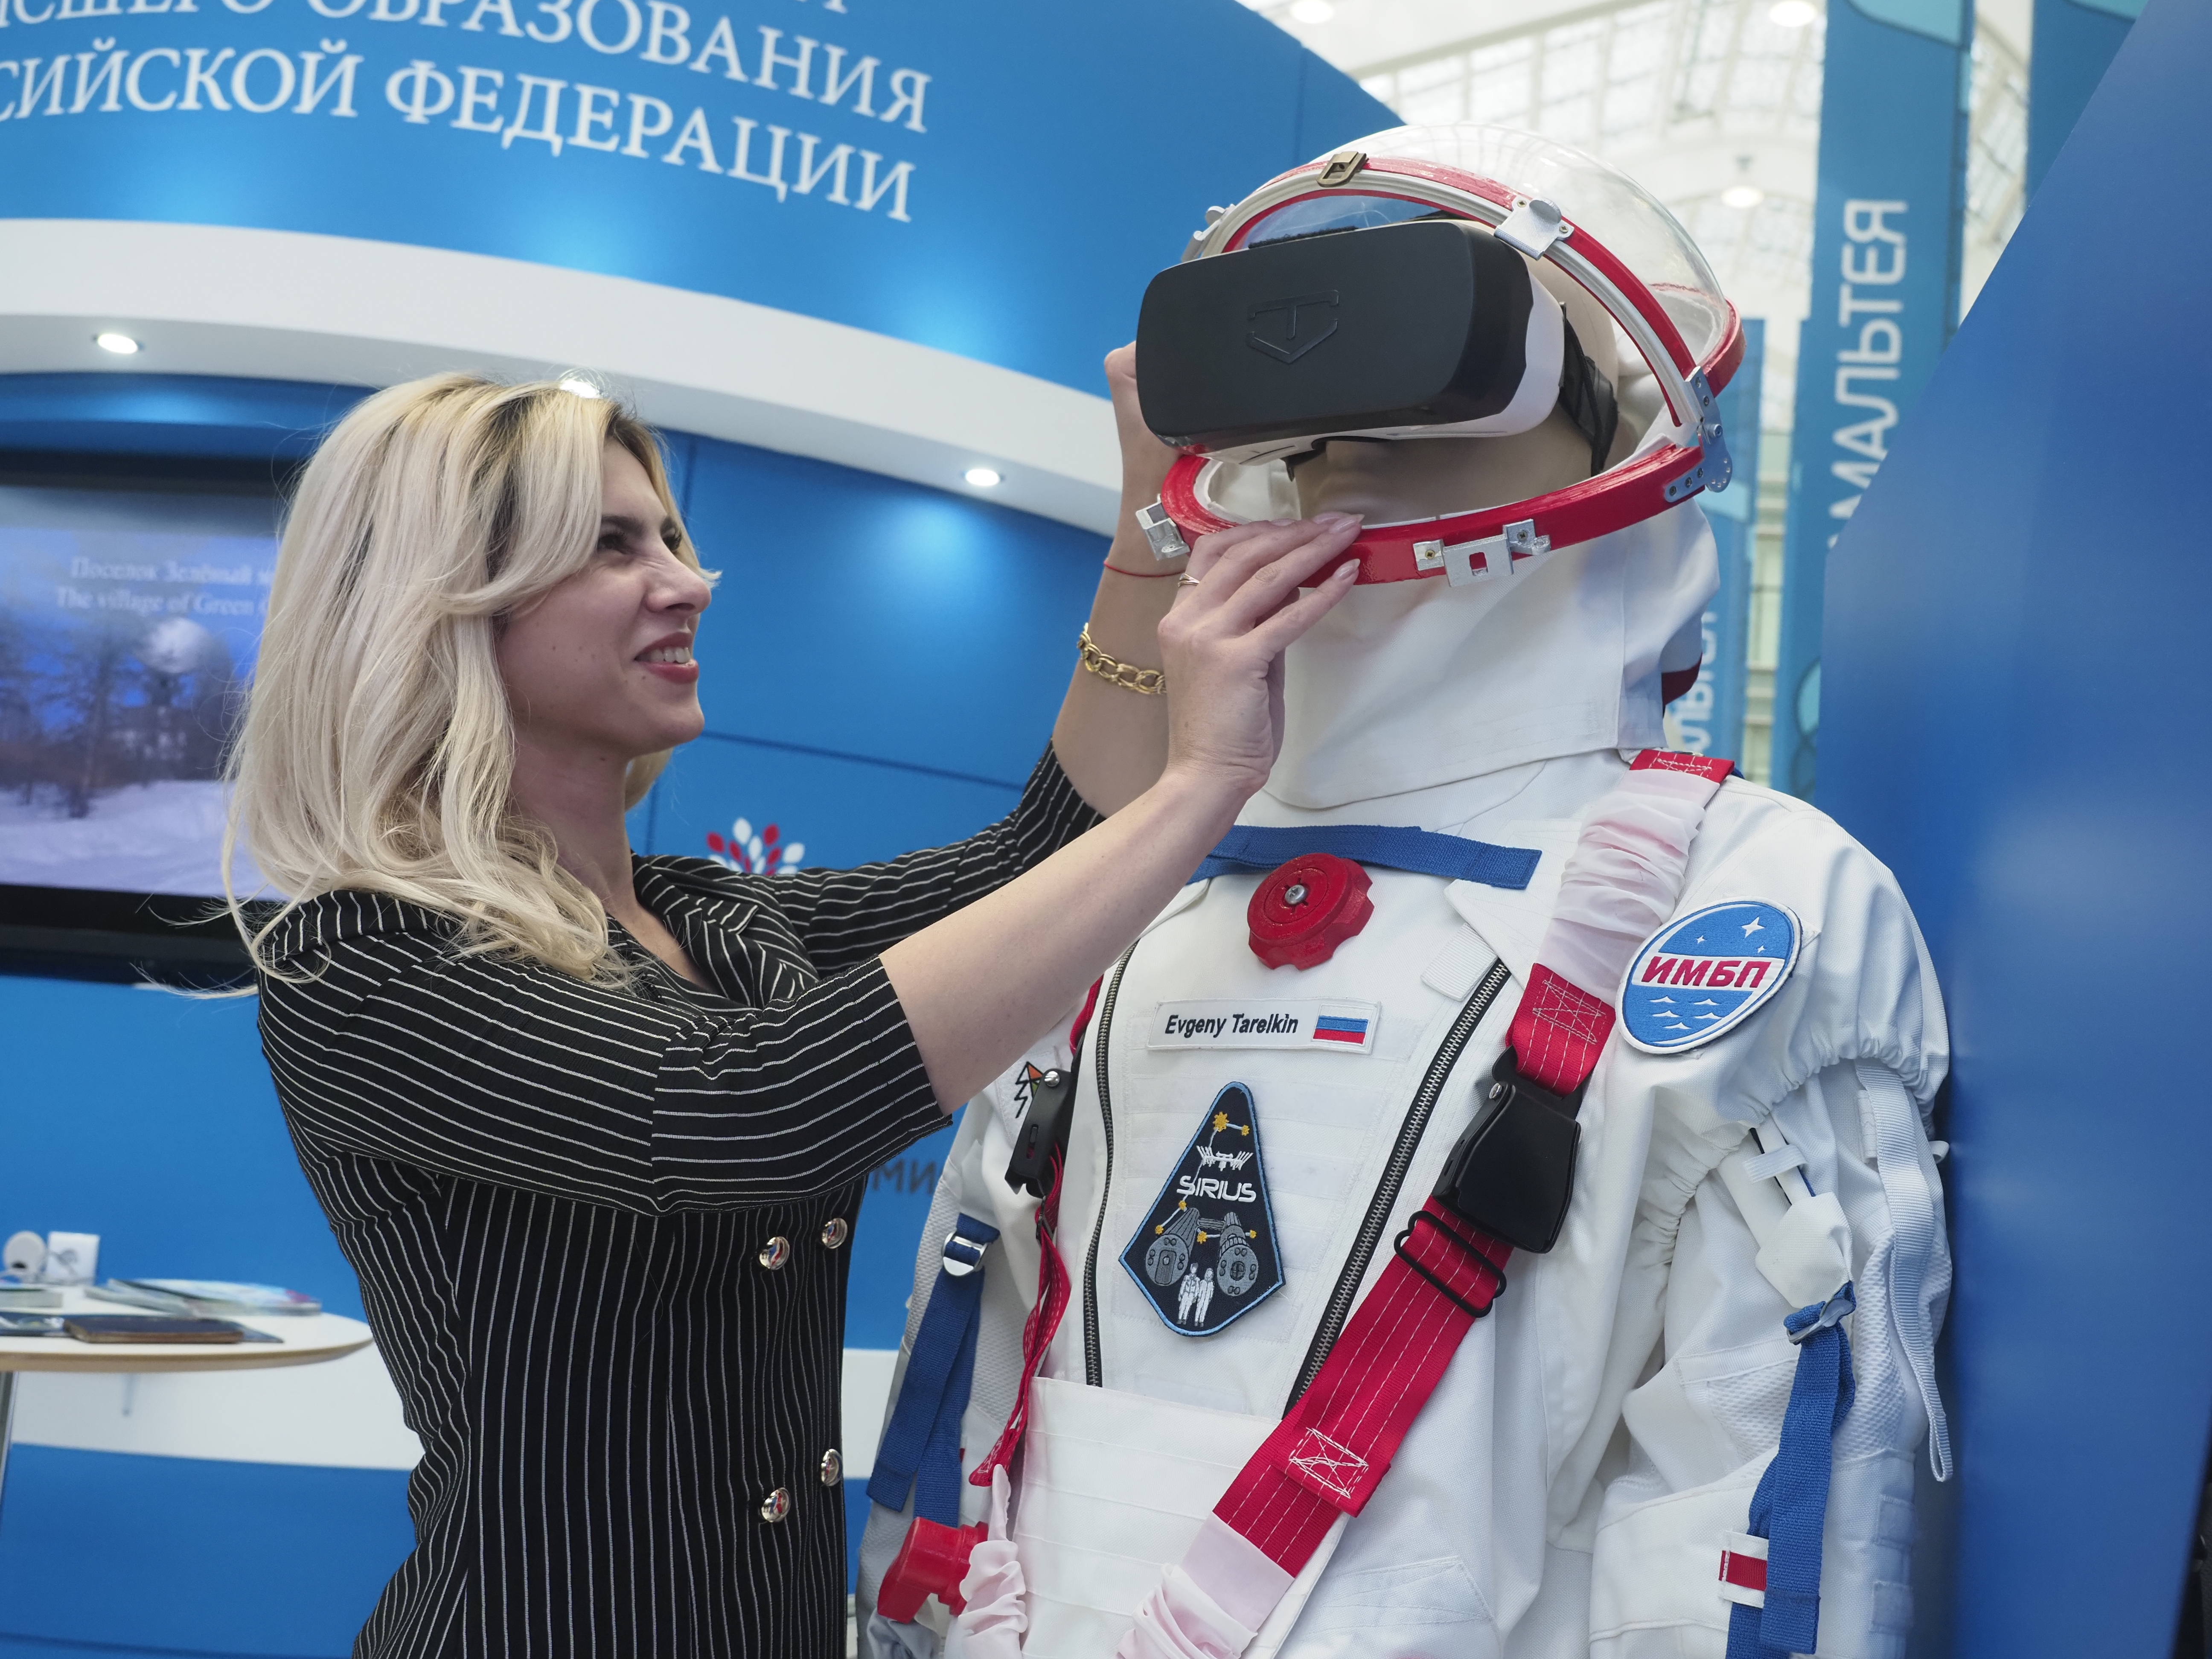 Гардероб за миллиард: москвичам расскажут об устройстве космических скафандров в ЗИЛе